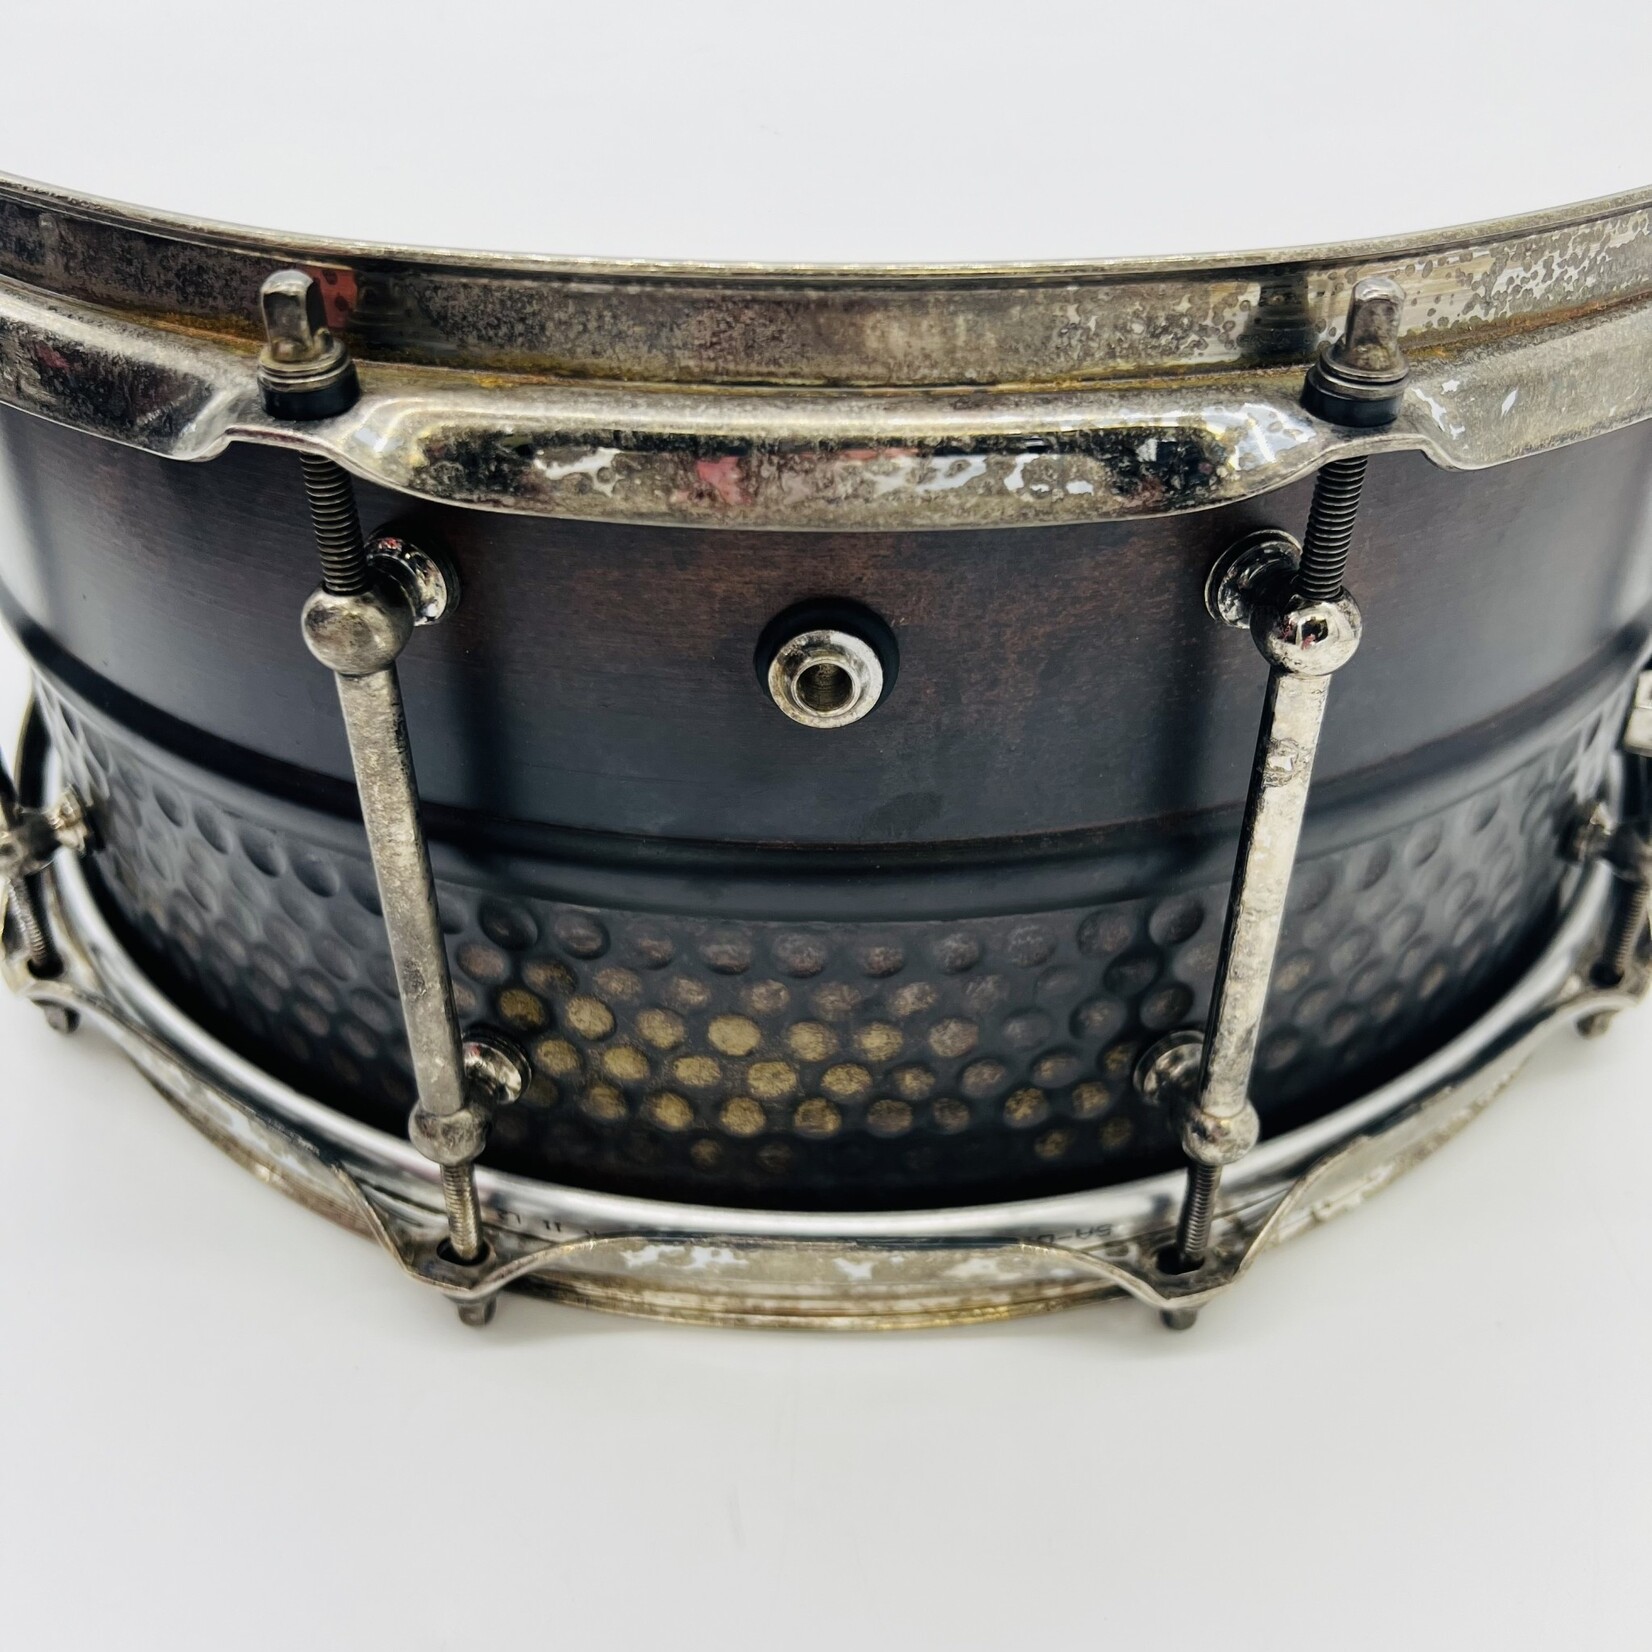 Pork Pie Pork Pie 6.5x14" Patina Copper & Hammered Brass Snare Drum (Aged Hardware)